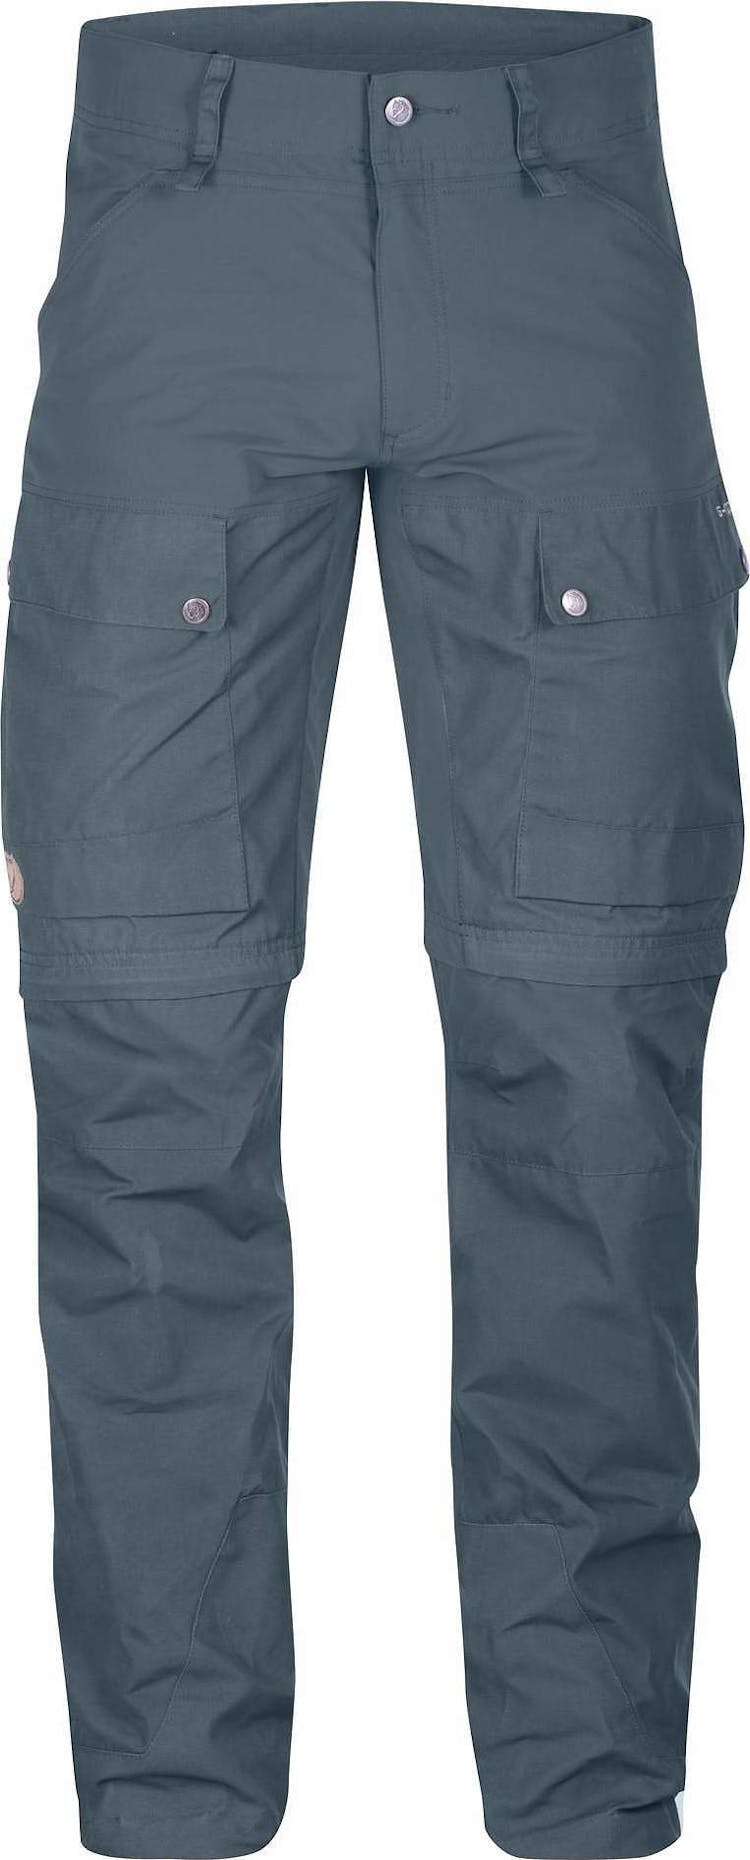 Numéro de l'image de la galerie de produits 1 pour le produit Pantalon Keb Gaiter Régulier - Homme